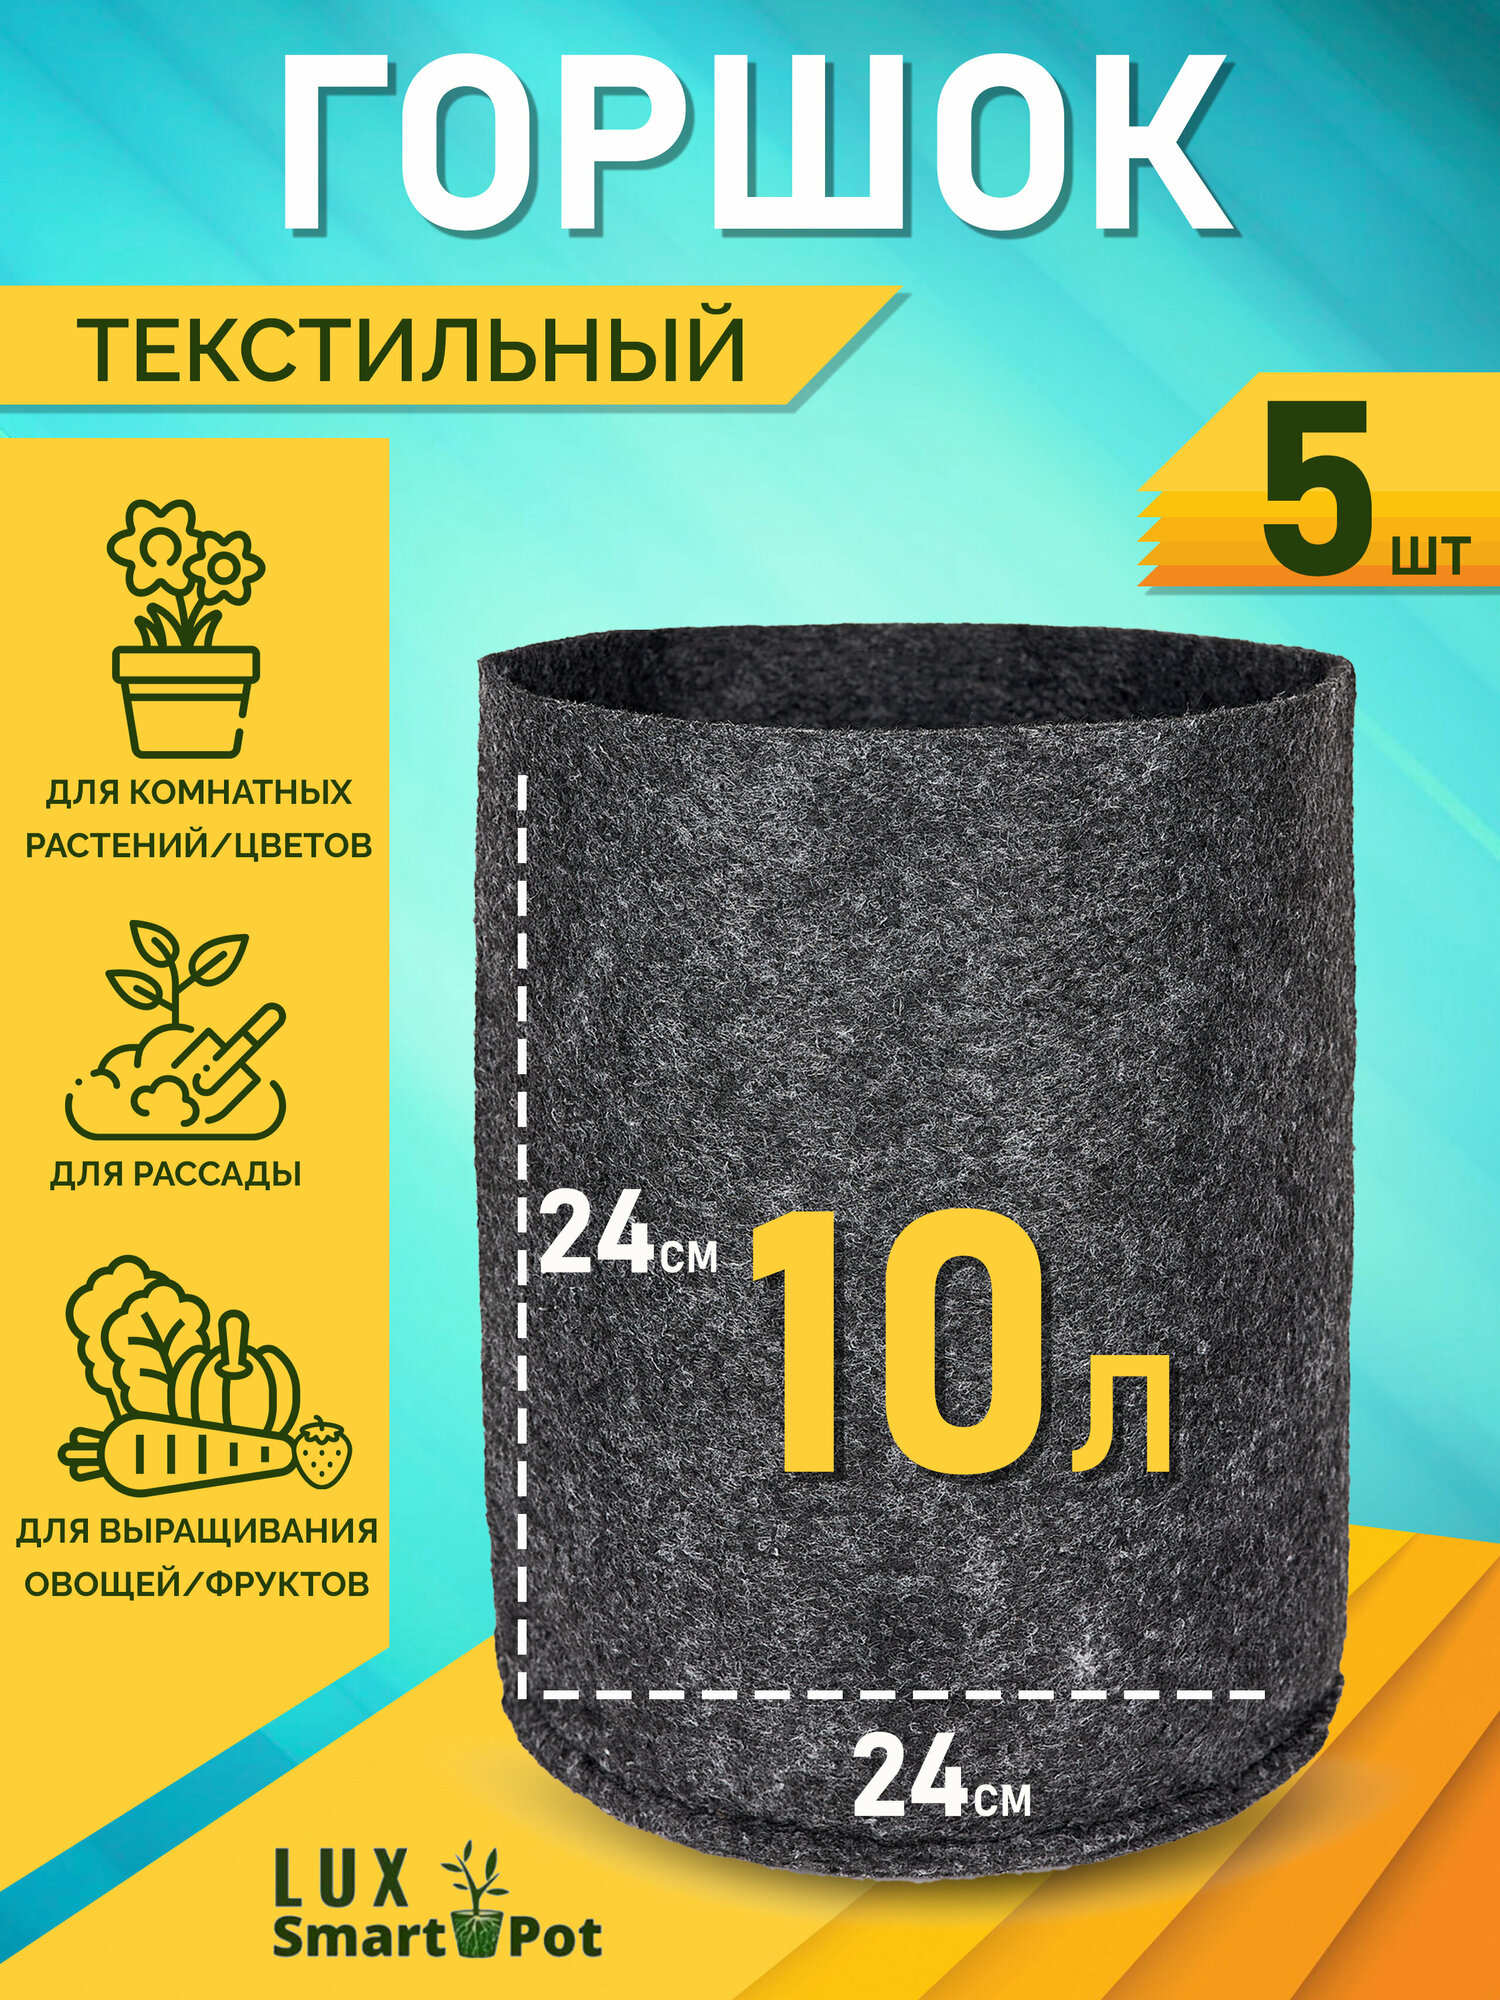 Горшок текстильный для рассады, растений, цветов SmartPot Lux - 10 л 5 шт.